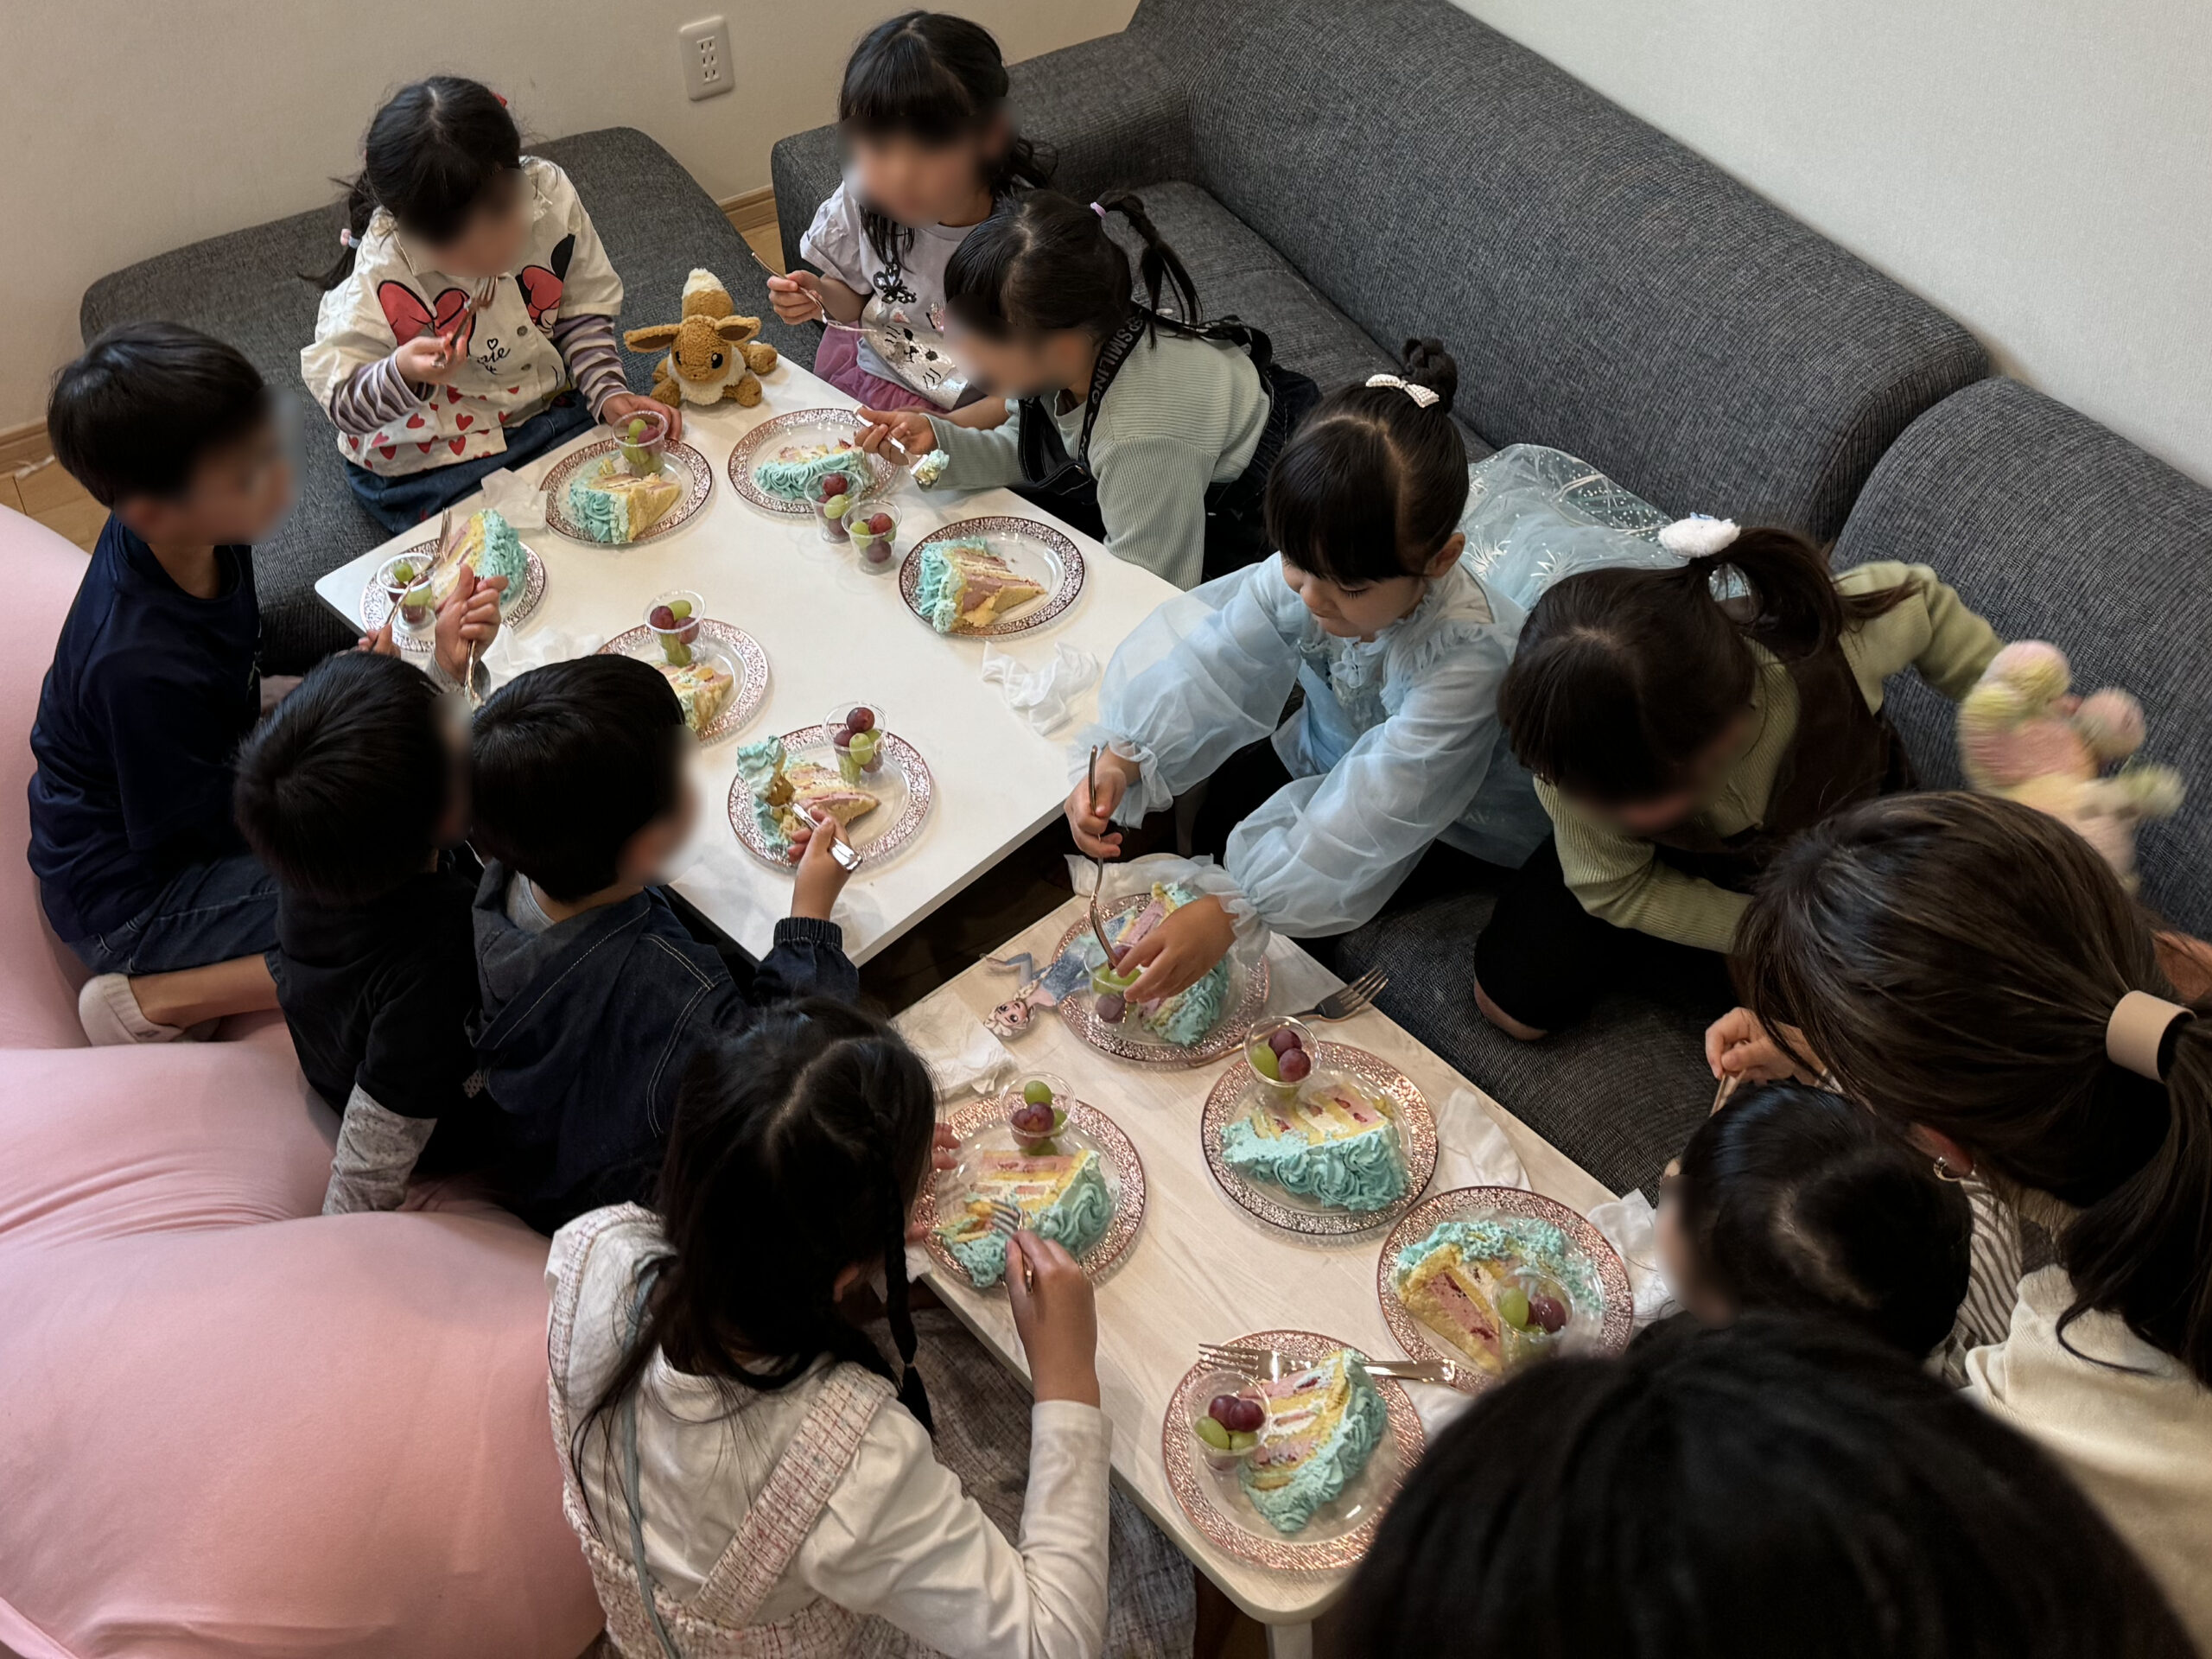 カットしたバースデーケーキを食べる子供達 5歳の娘のお誕生日会でマジックショー 藤沢市, 神奈川県